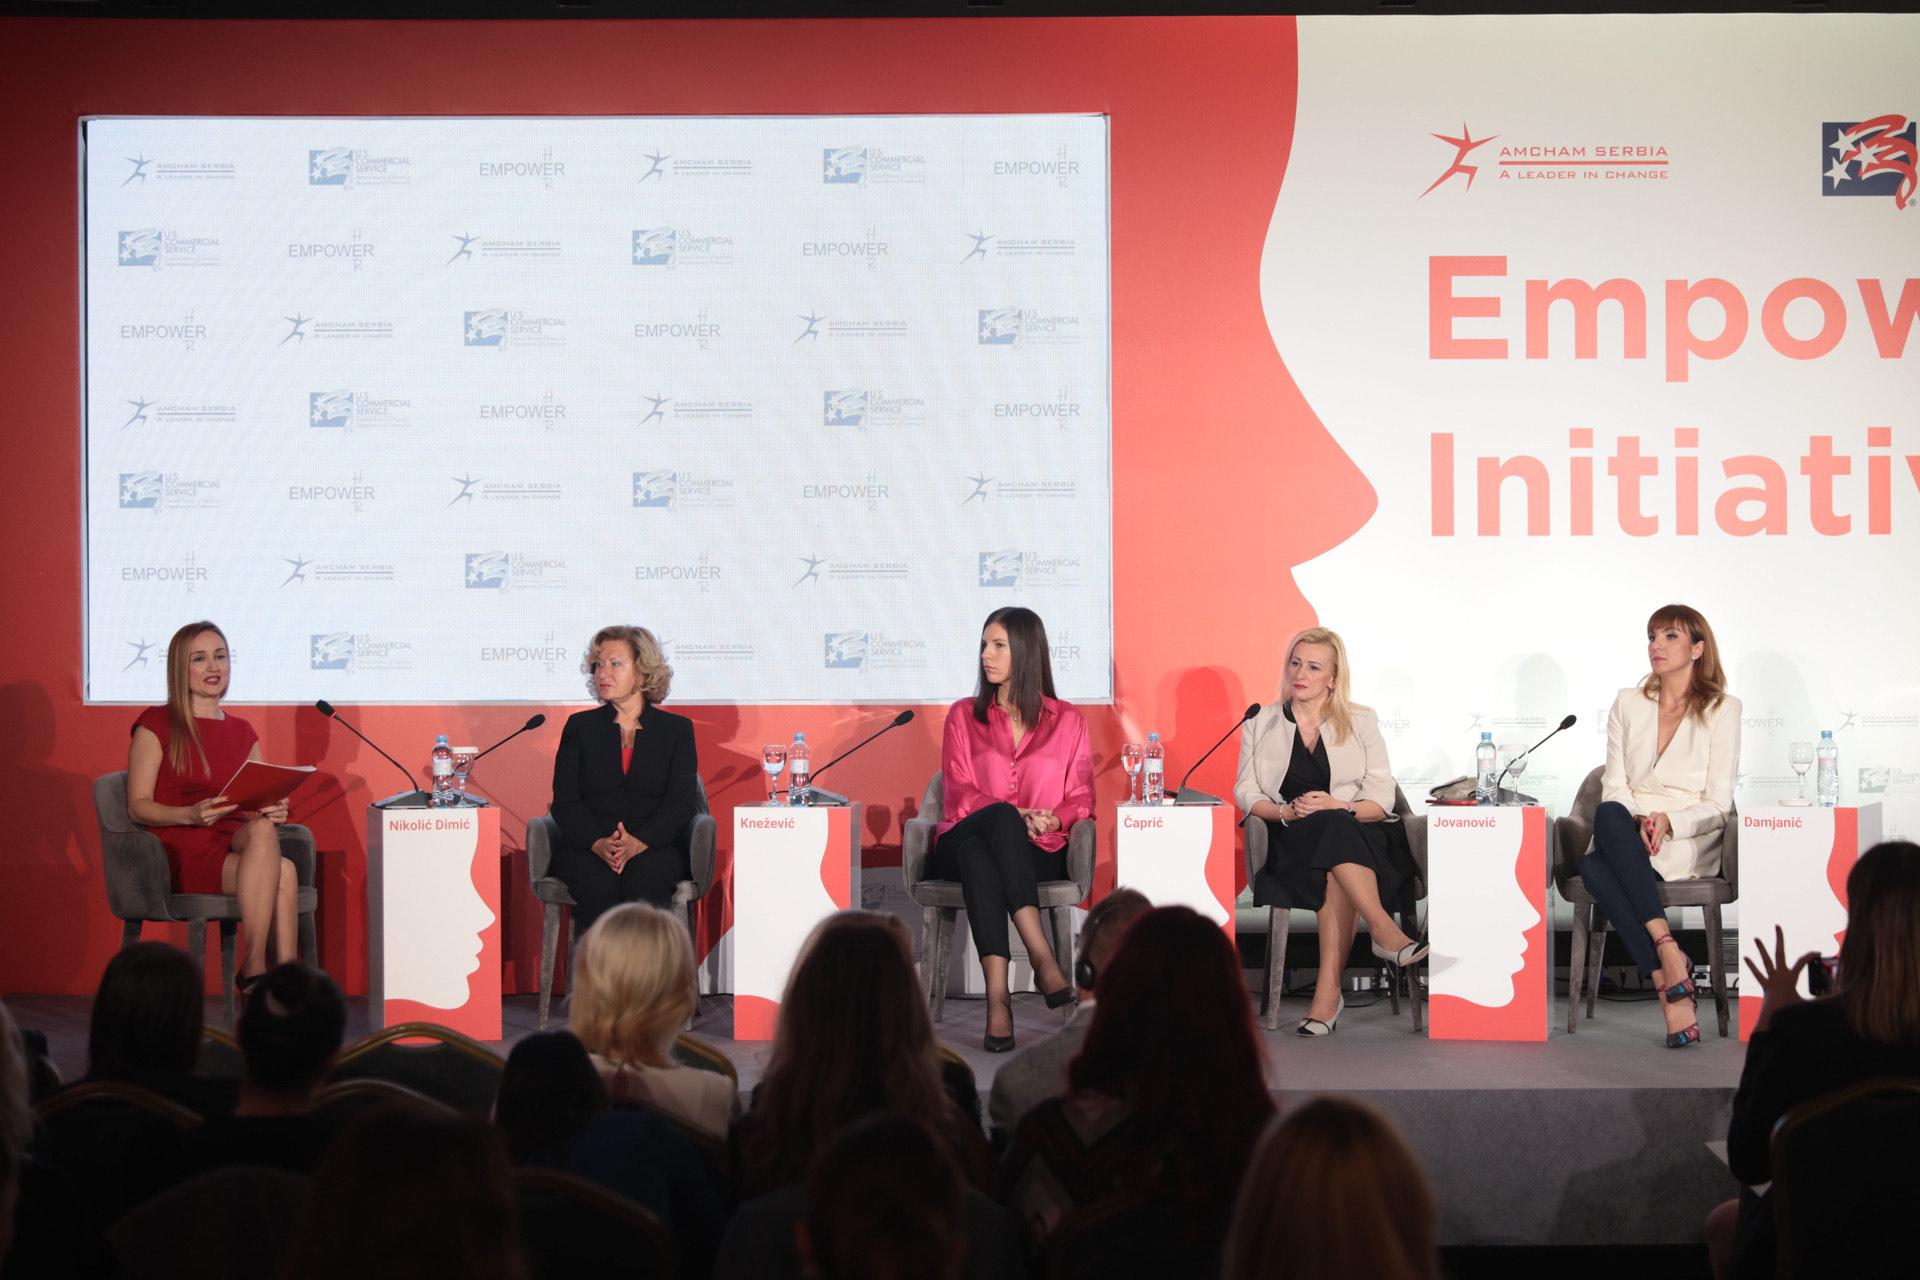 Učesnice panel diskusije koja je održana 12. oktobra u Beogradu, povodom početka projekta Empower HER  